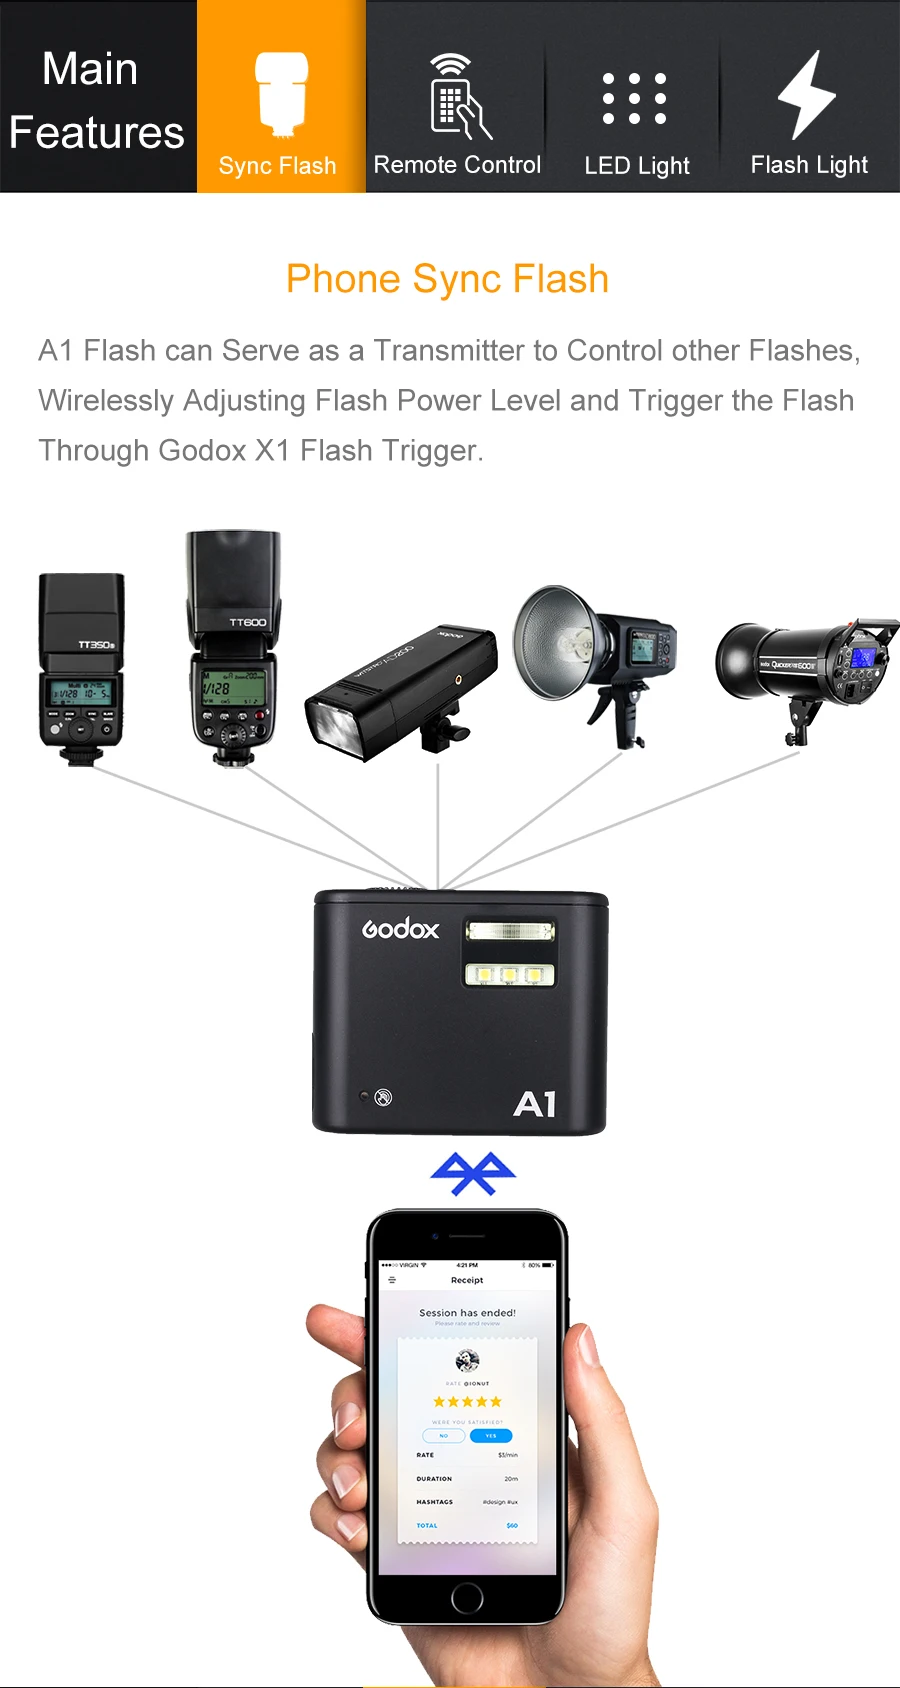 Godox A1 смартфон вспышка Системы 2,4G Беспроводной вспышка триггер Постоянный СВЕТОДИОДНЫЙ светильник с Батарея для iPhone 6S 7 plus